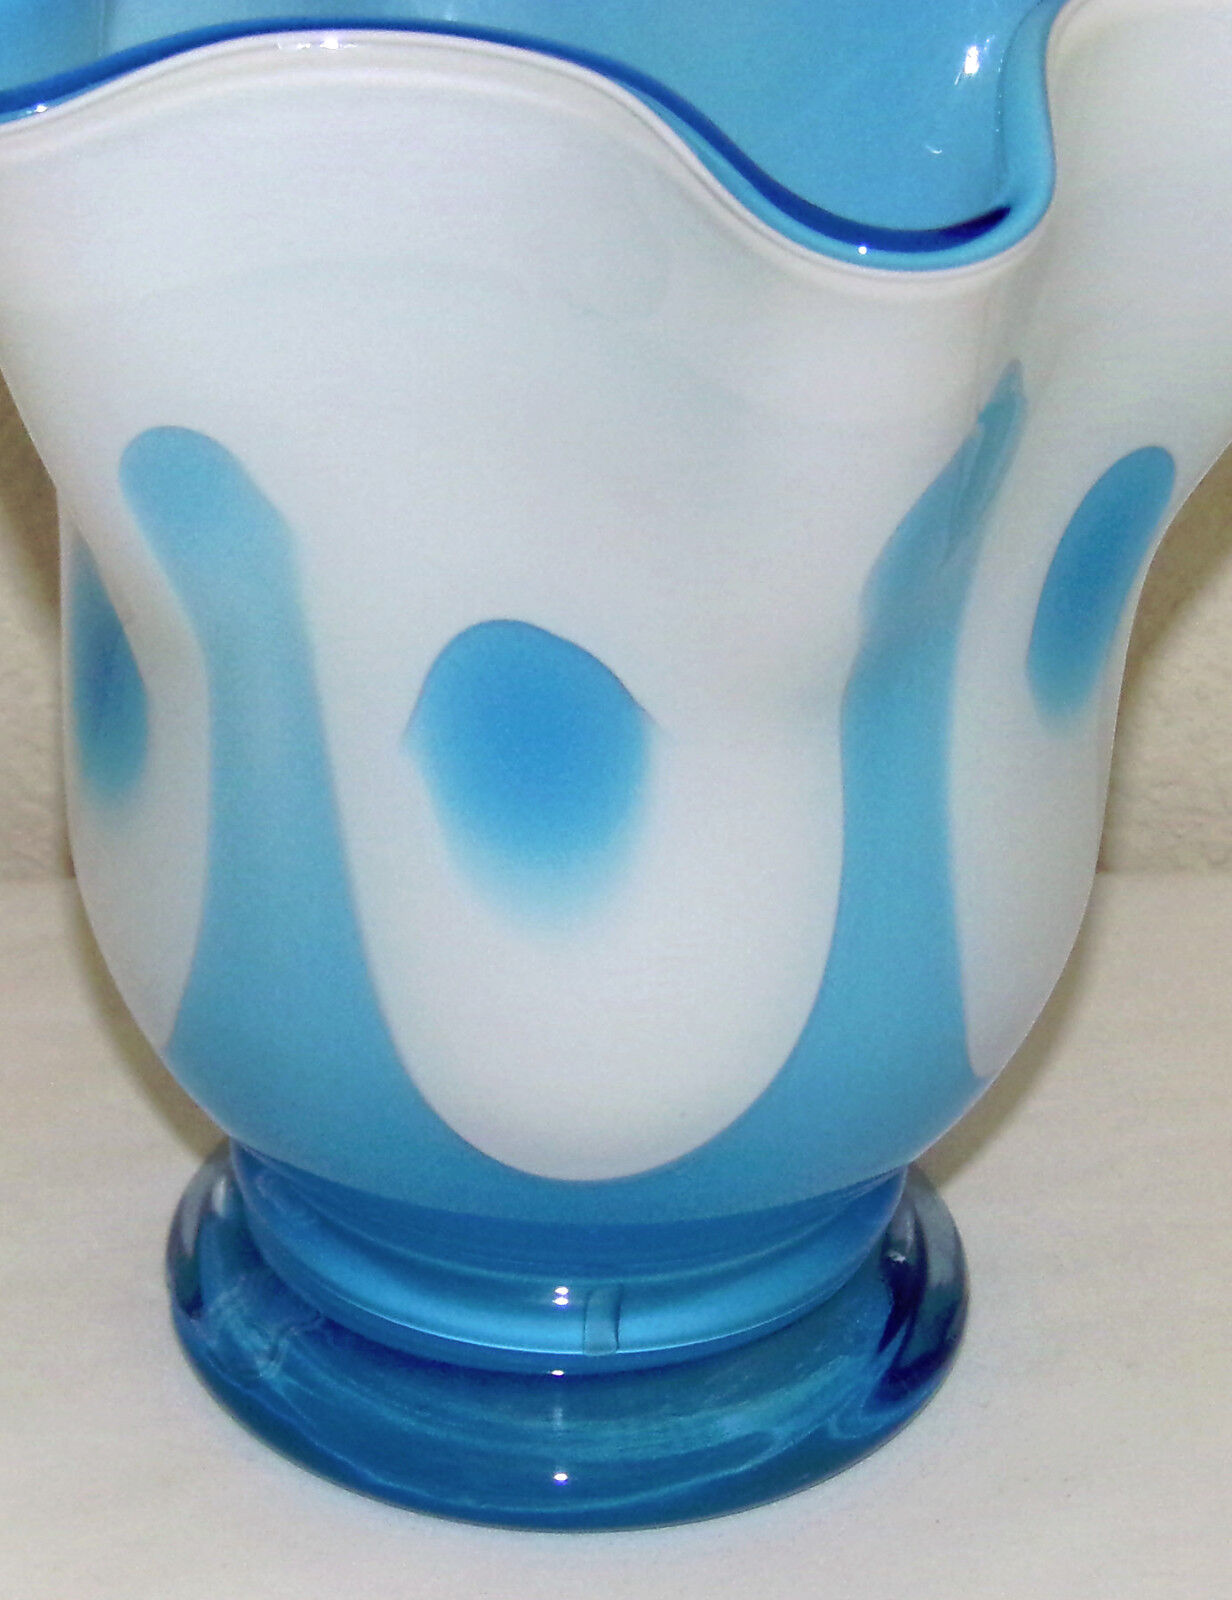 Vintage Cased Glass Handkerchief Vase Blue White Hand Blown Glass Mid Century